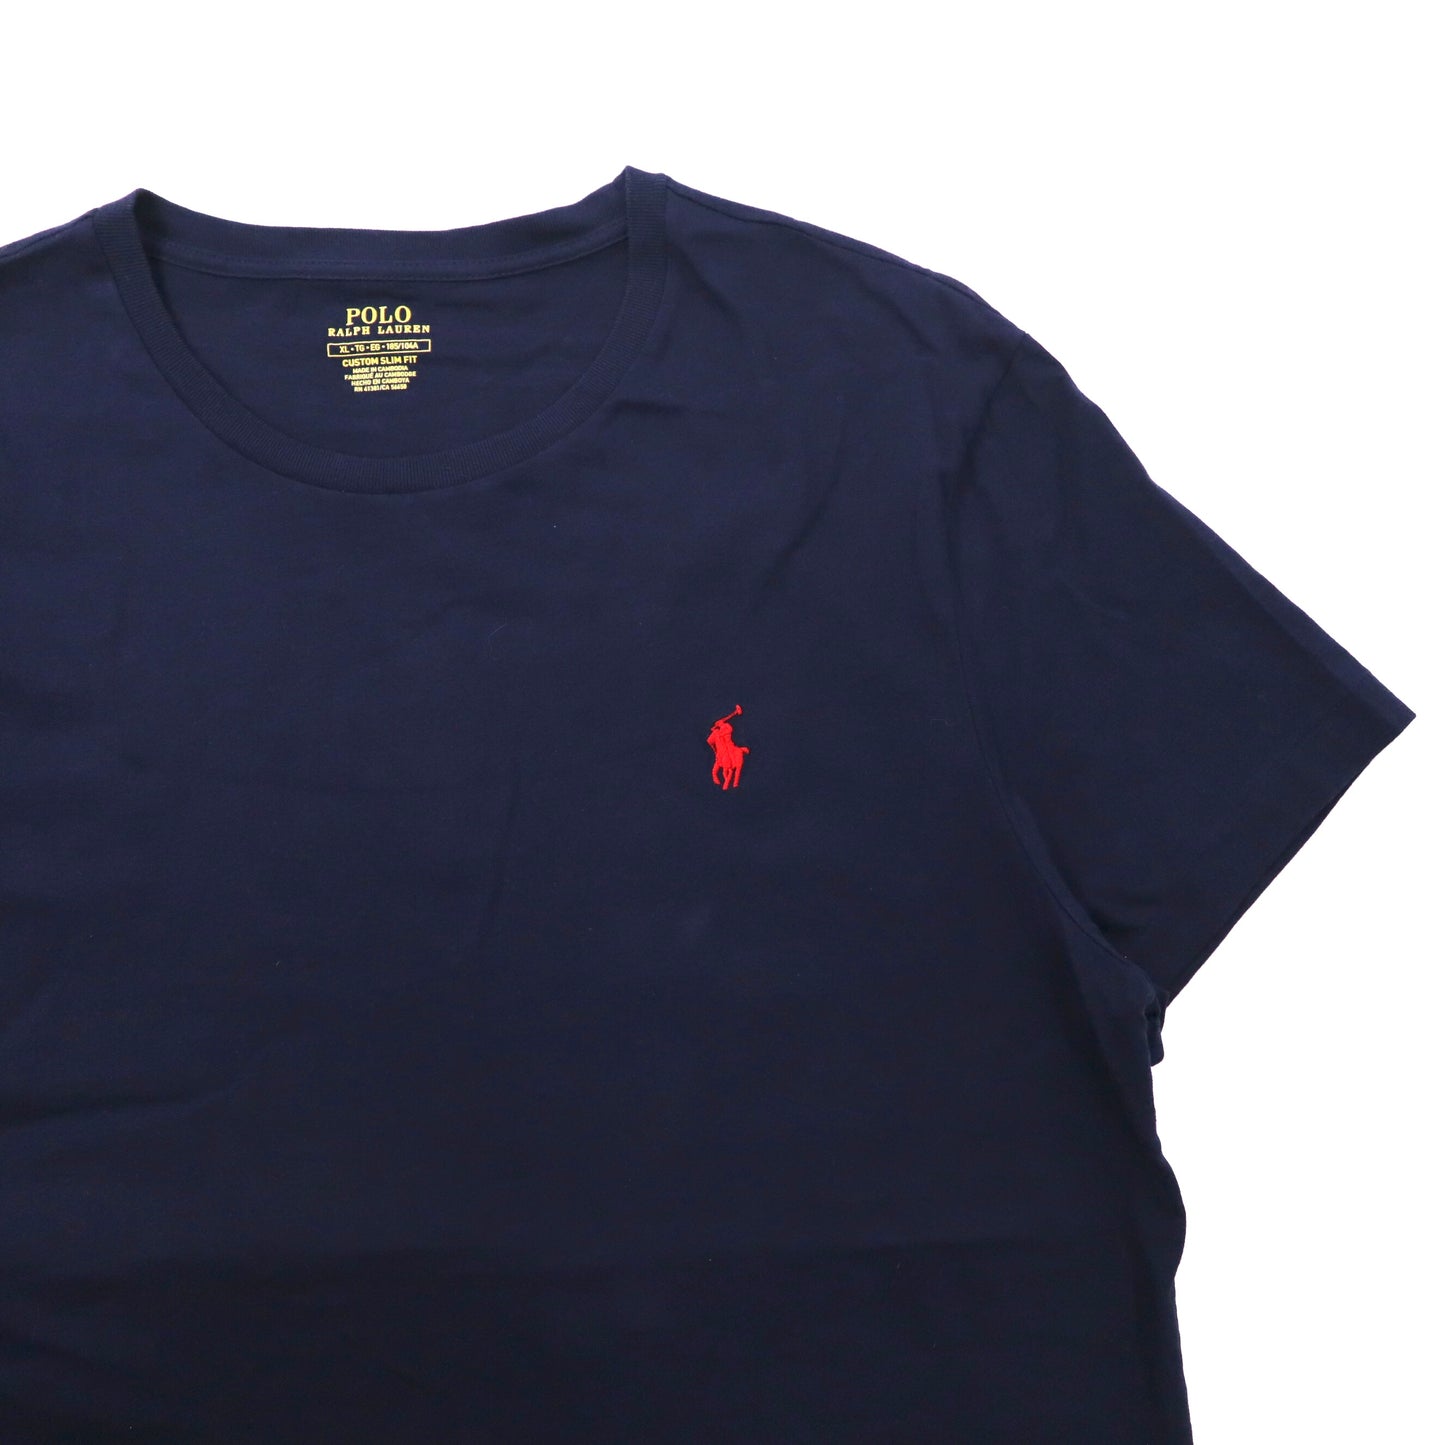 POLO RALPH LAUREN ワンポイントロゴTシャツ XL ネイビー コットン CUSTOM SLIM FIT スモールポニー刺繍